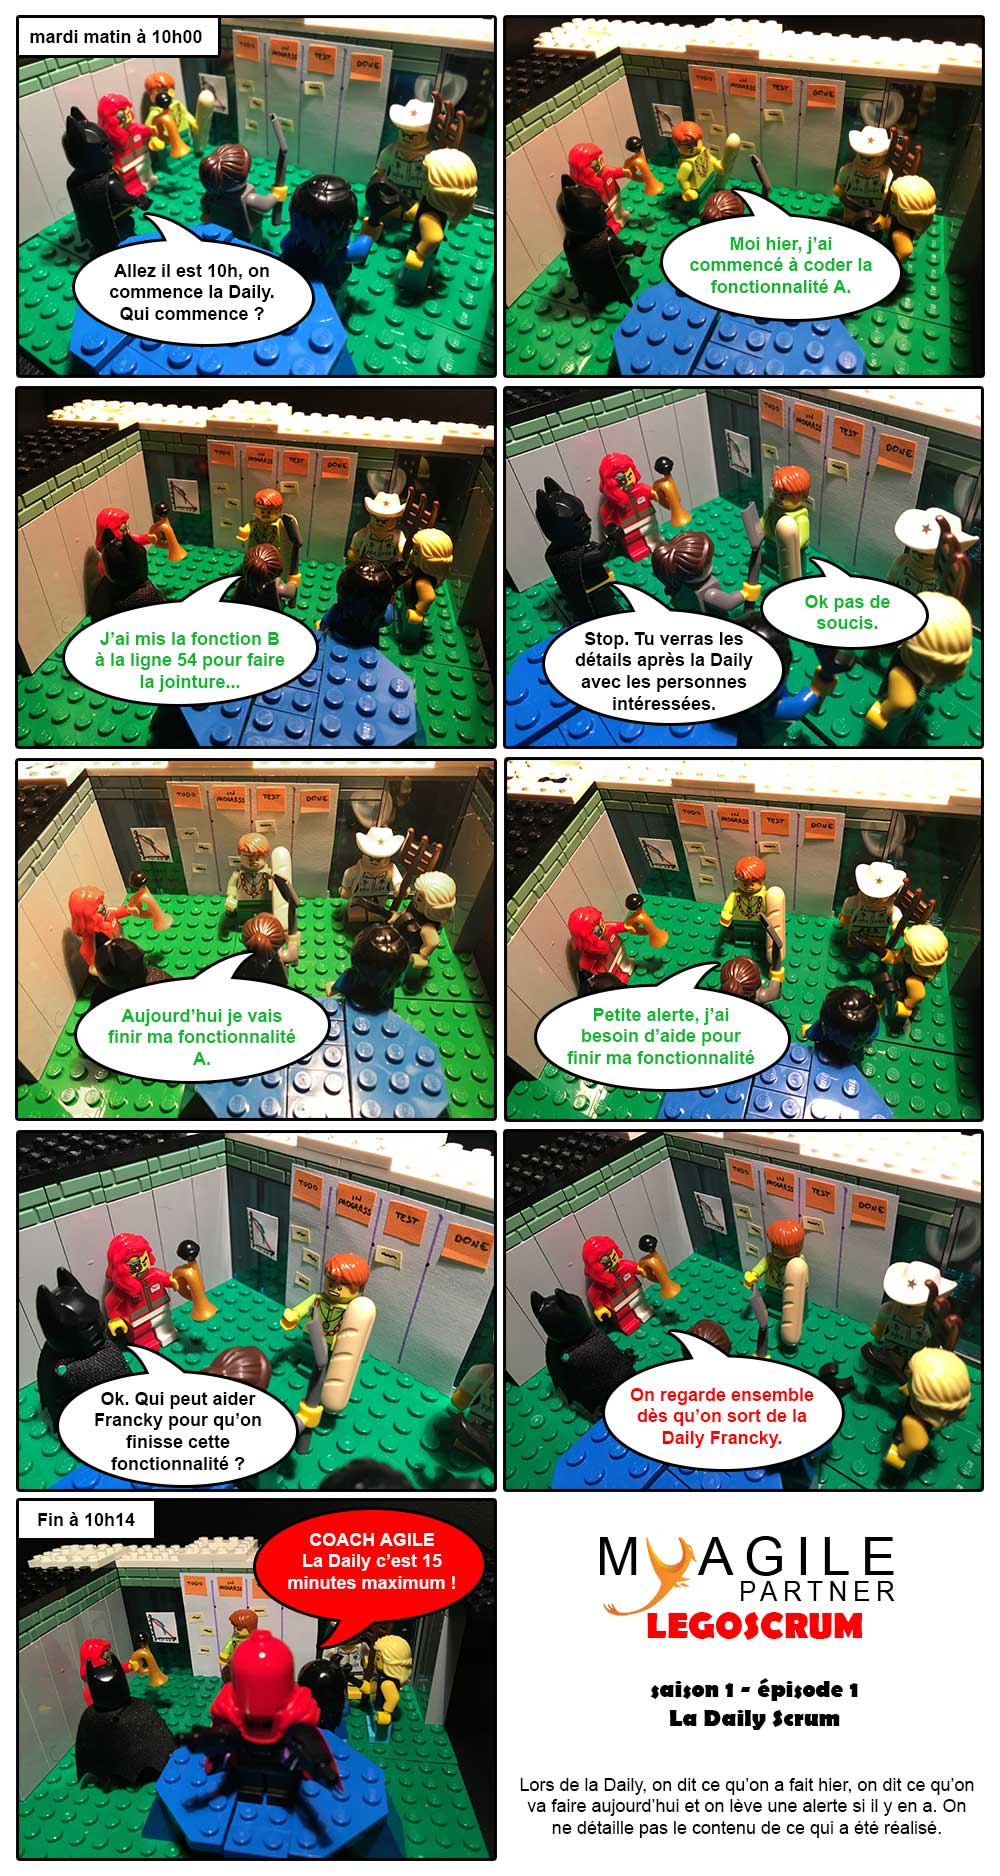 Legoscrum - S01E01 - la Daily